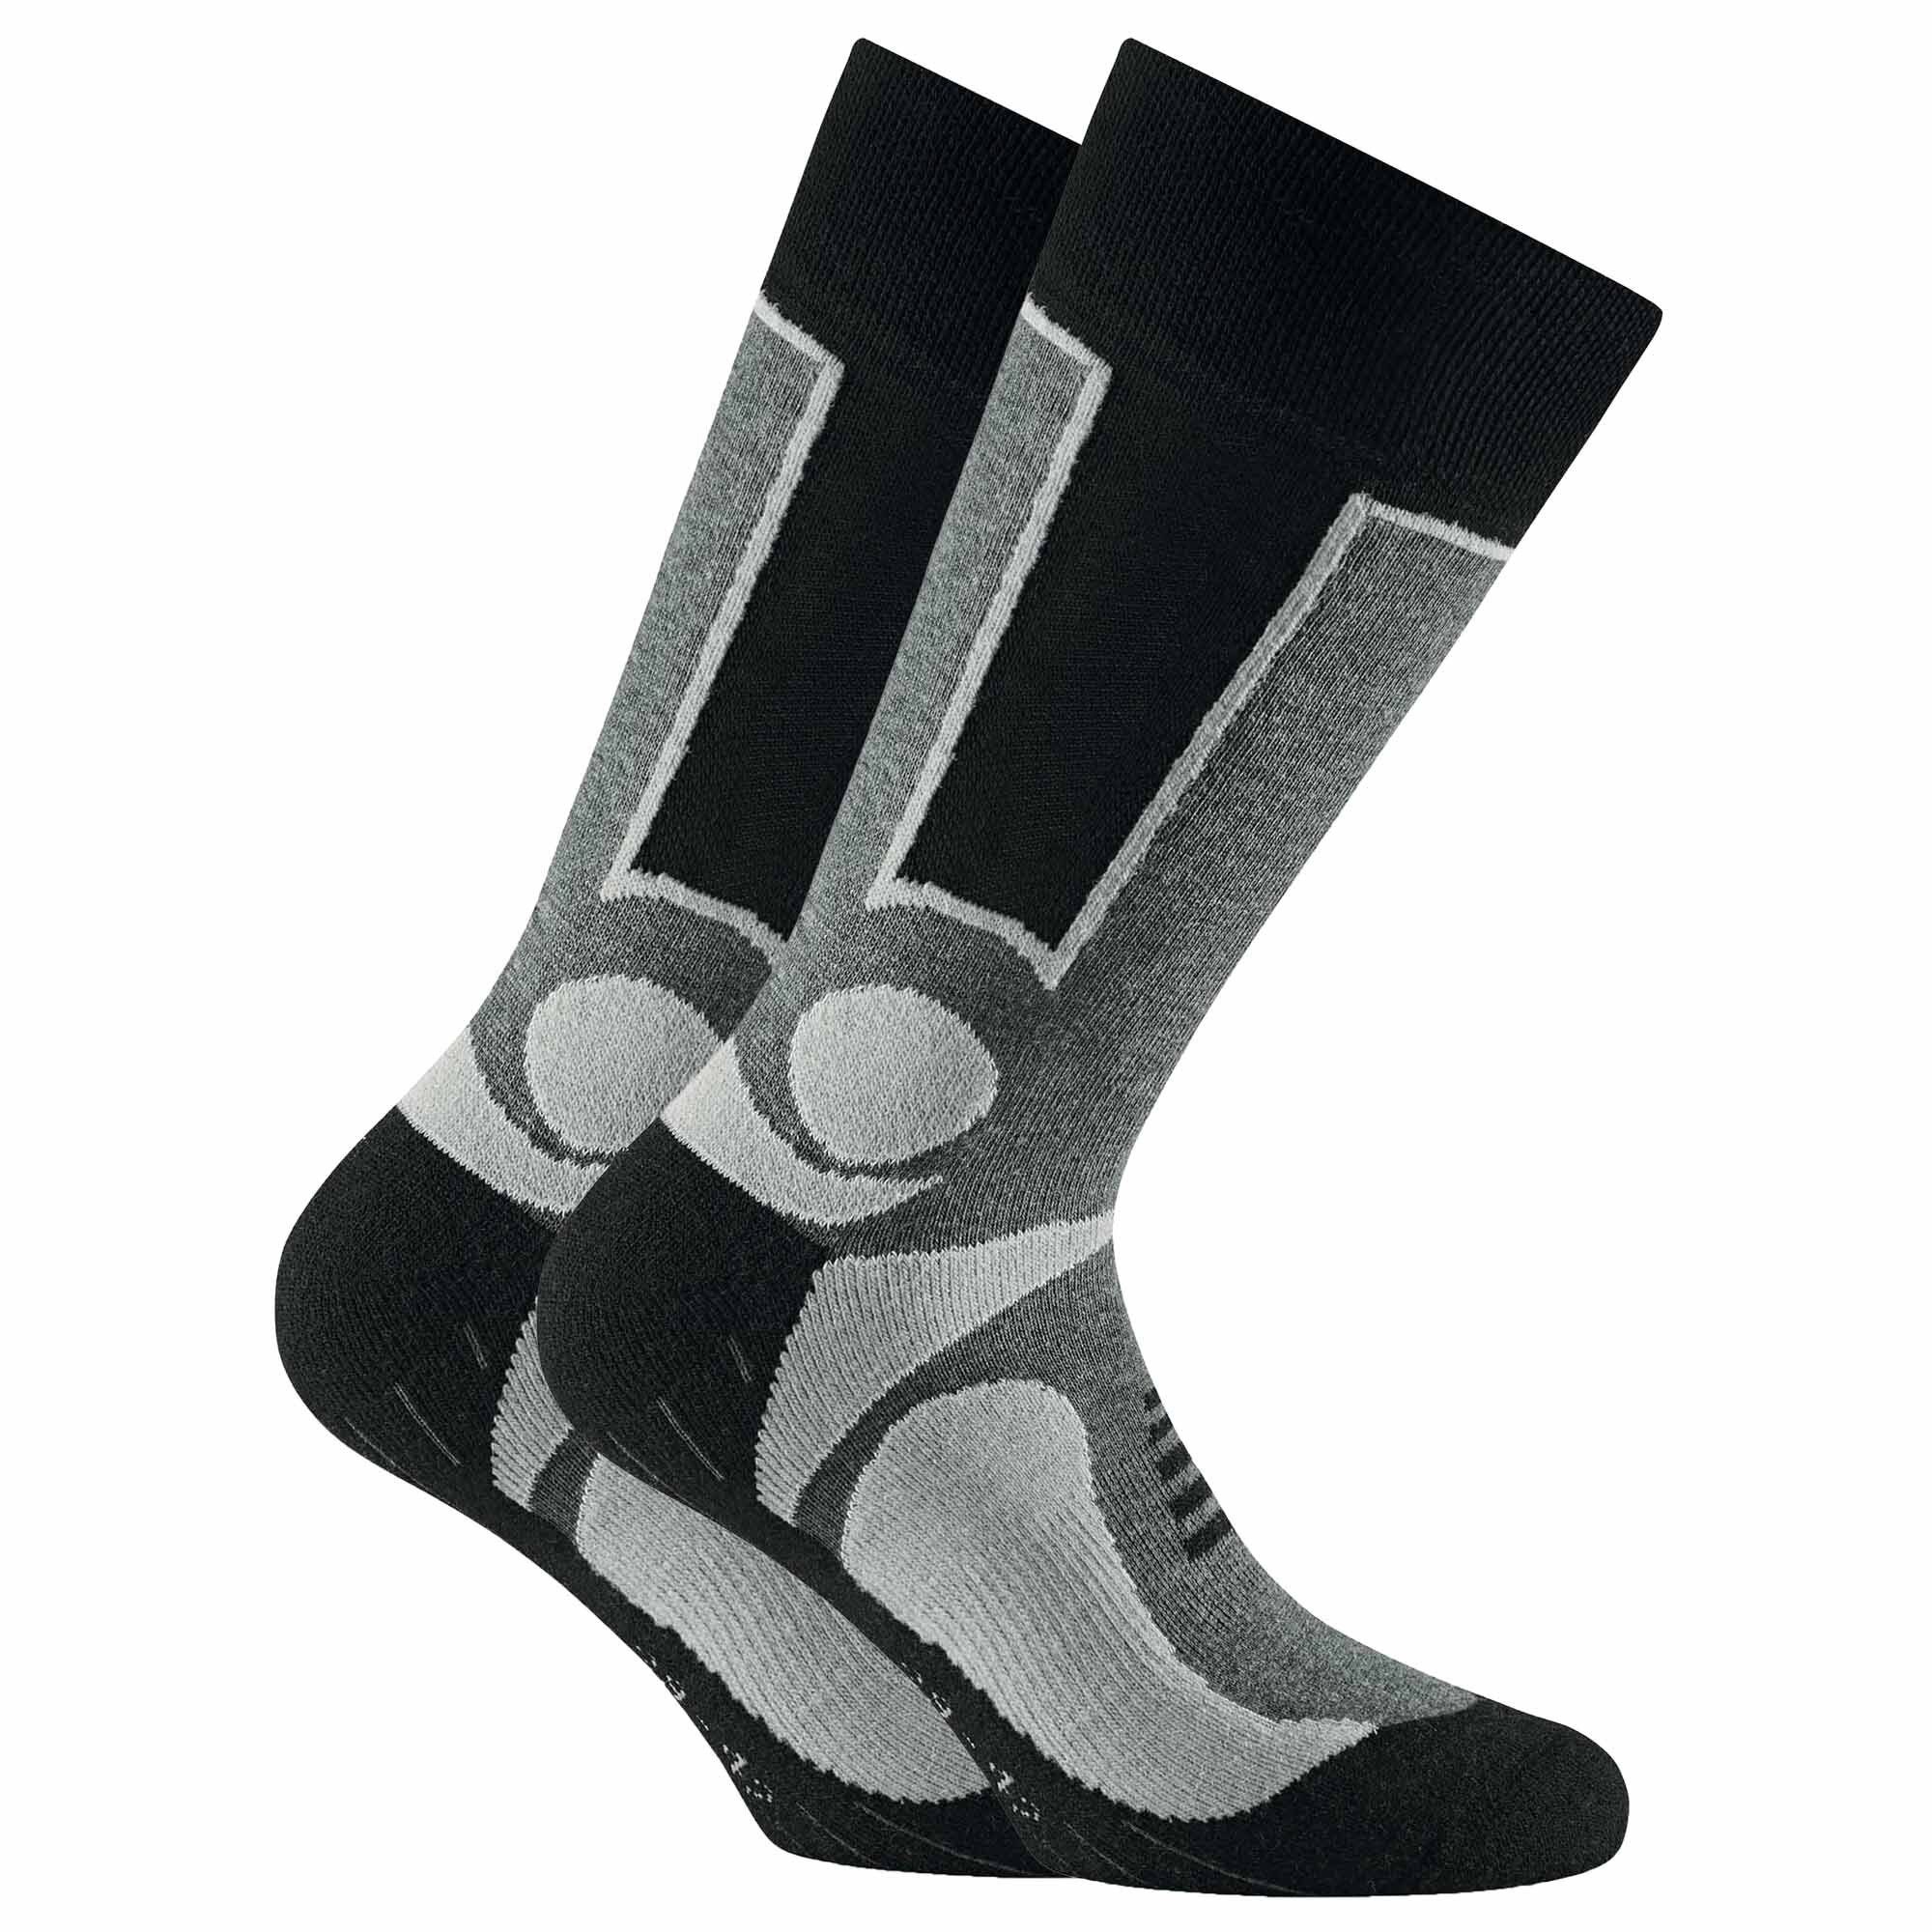 Rohner Socks Pack Sportsocken Trekking Outdoor - Basic Unisex Grau Socken, 2er